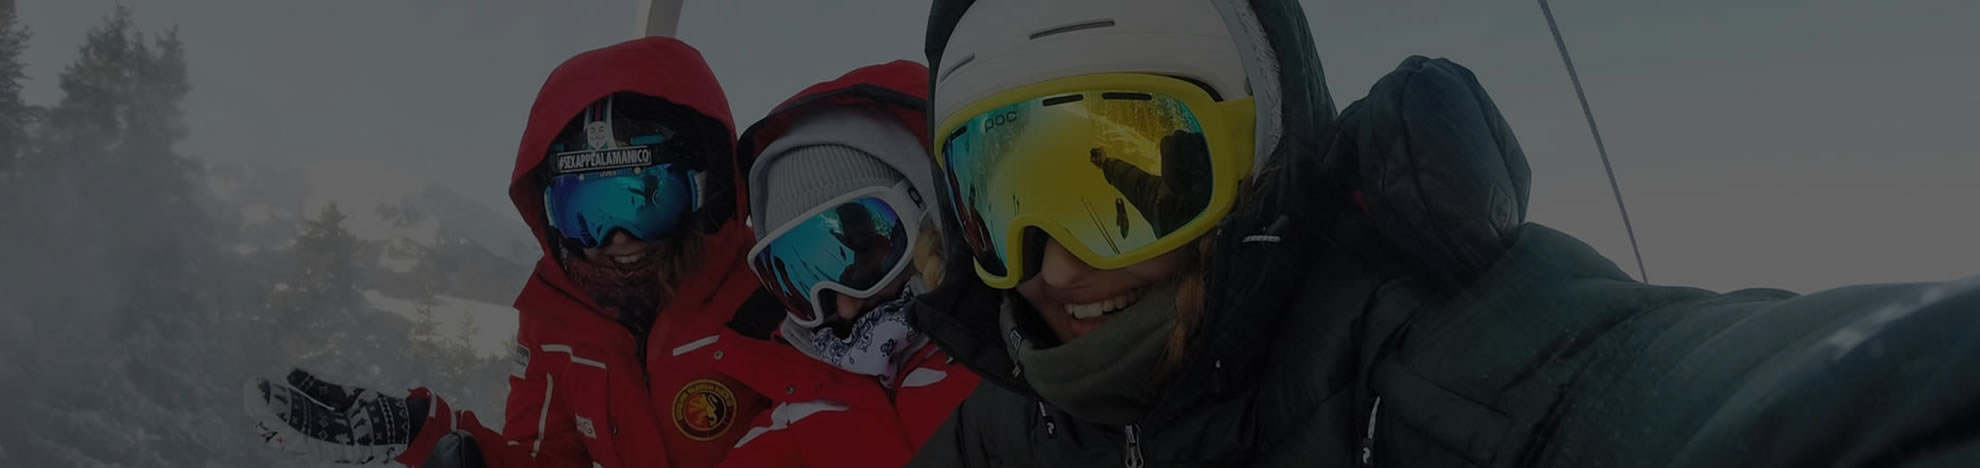 family-ski-header